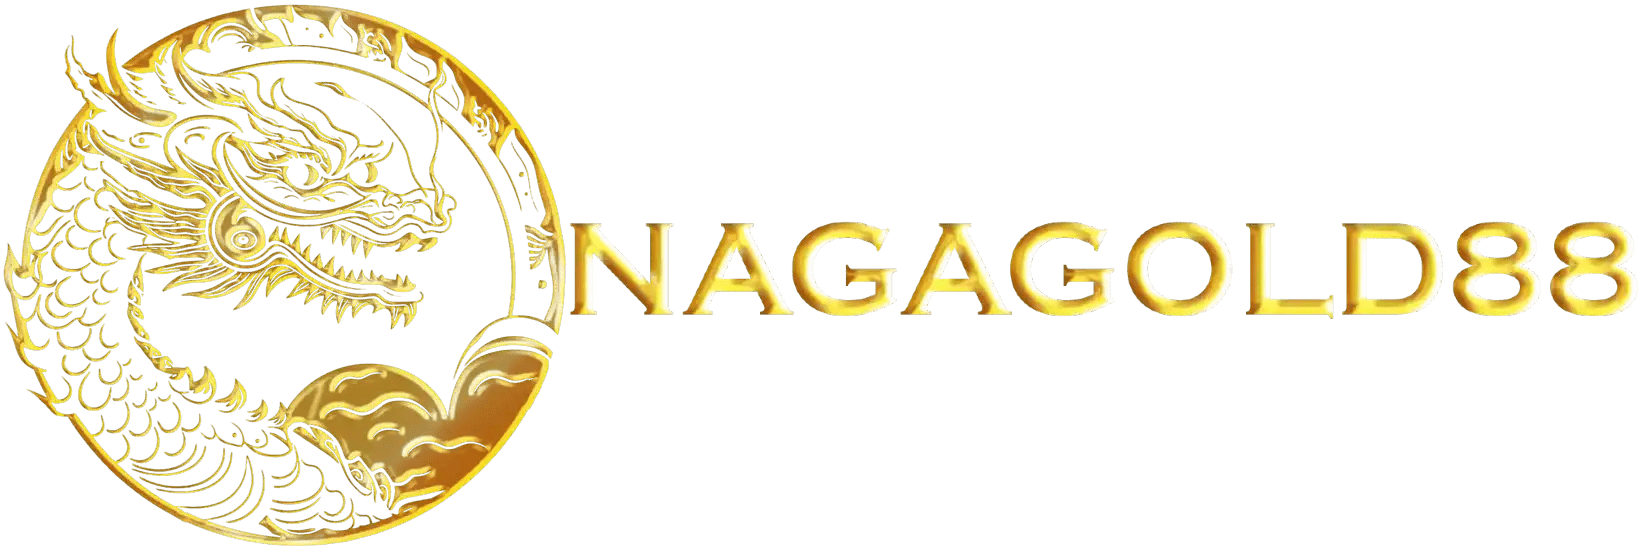 Nagagold88 &lt;&gt; Agen Game Online Terbaik Sepanjang Masa Loh Pasti Mendapatkan Kemenangan